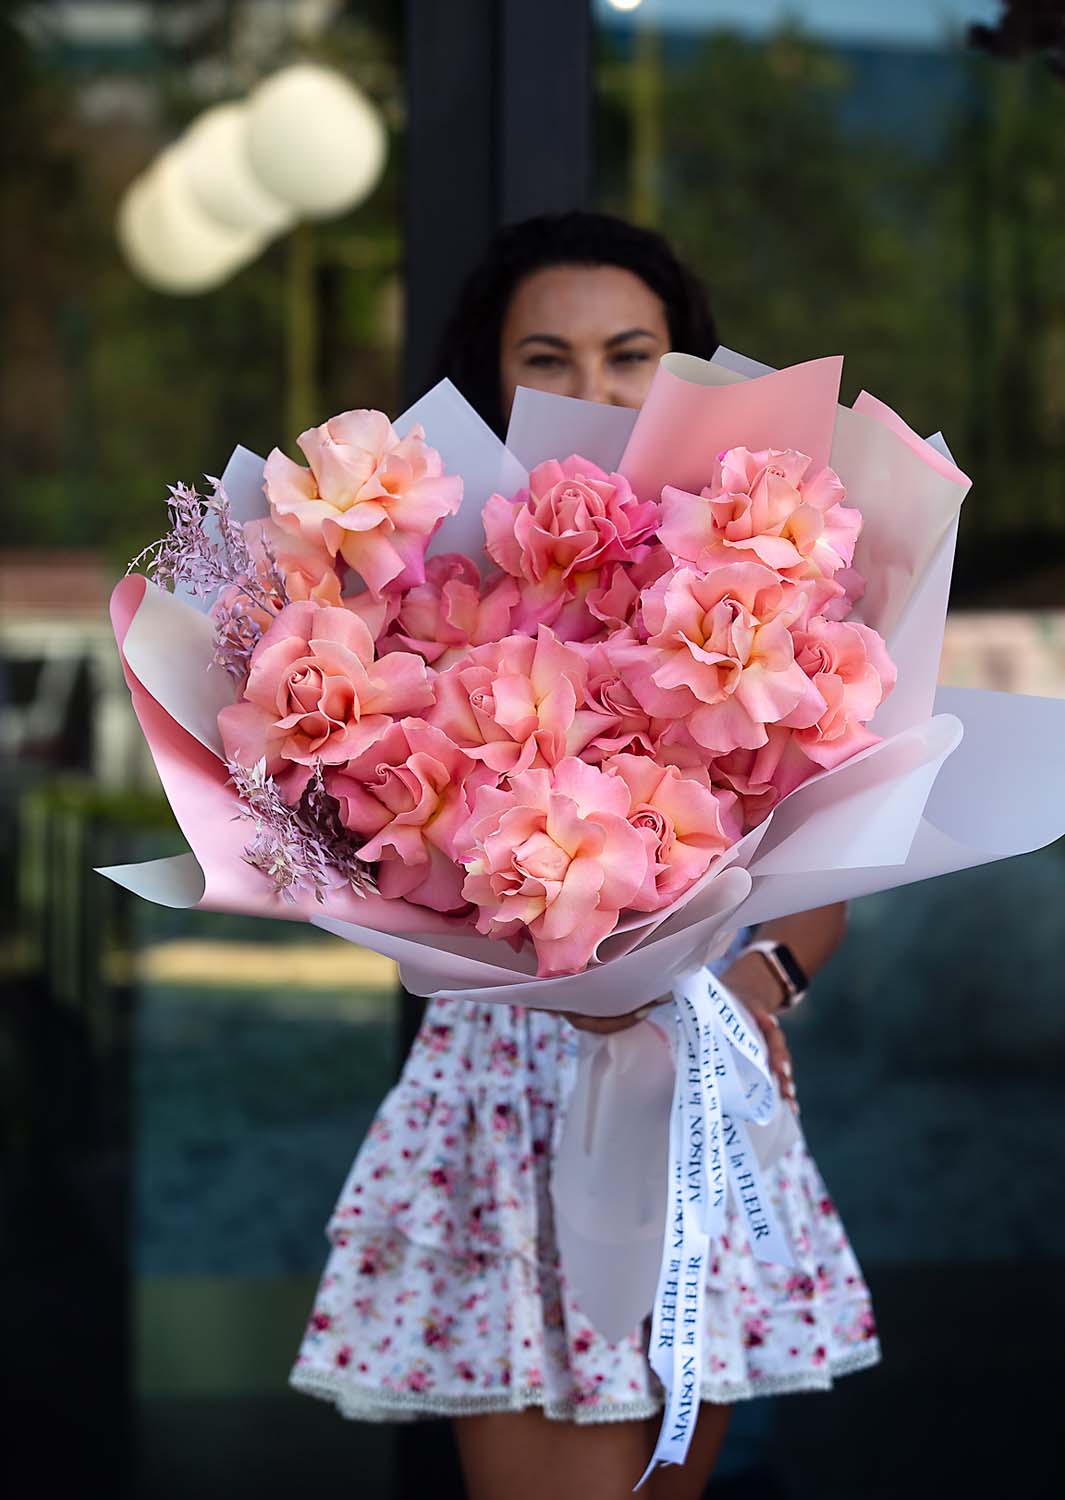 Dozen Flower Bouquets, Ciao Bella! - premium 2 dozen long stem roses - Maison la Fleur